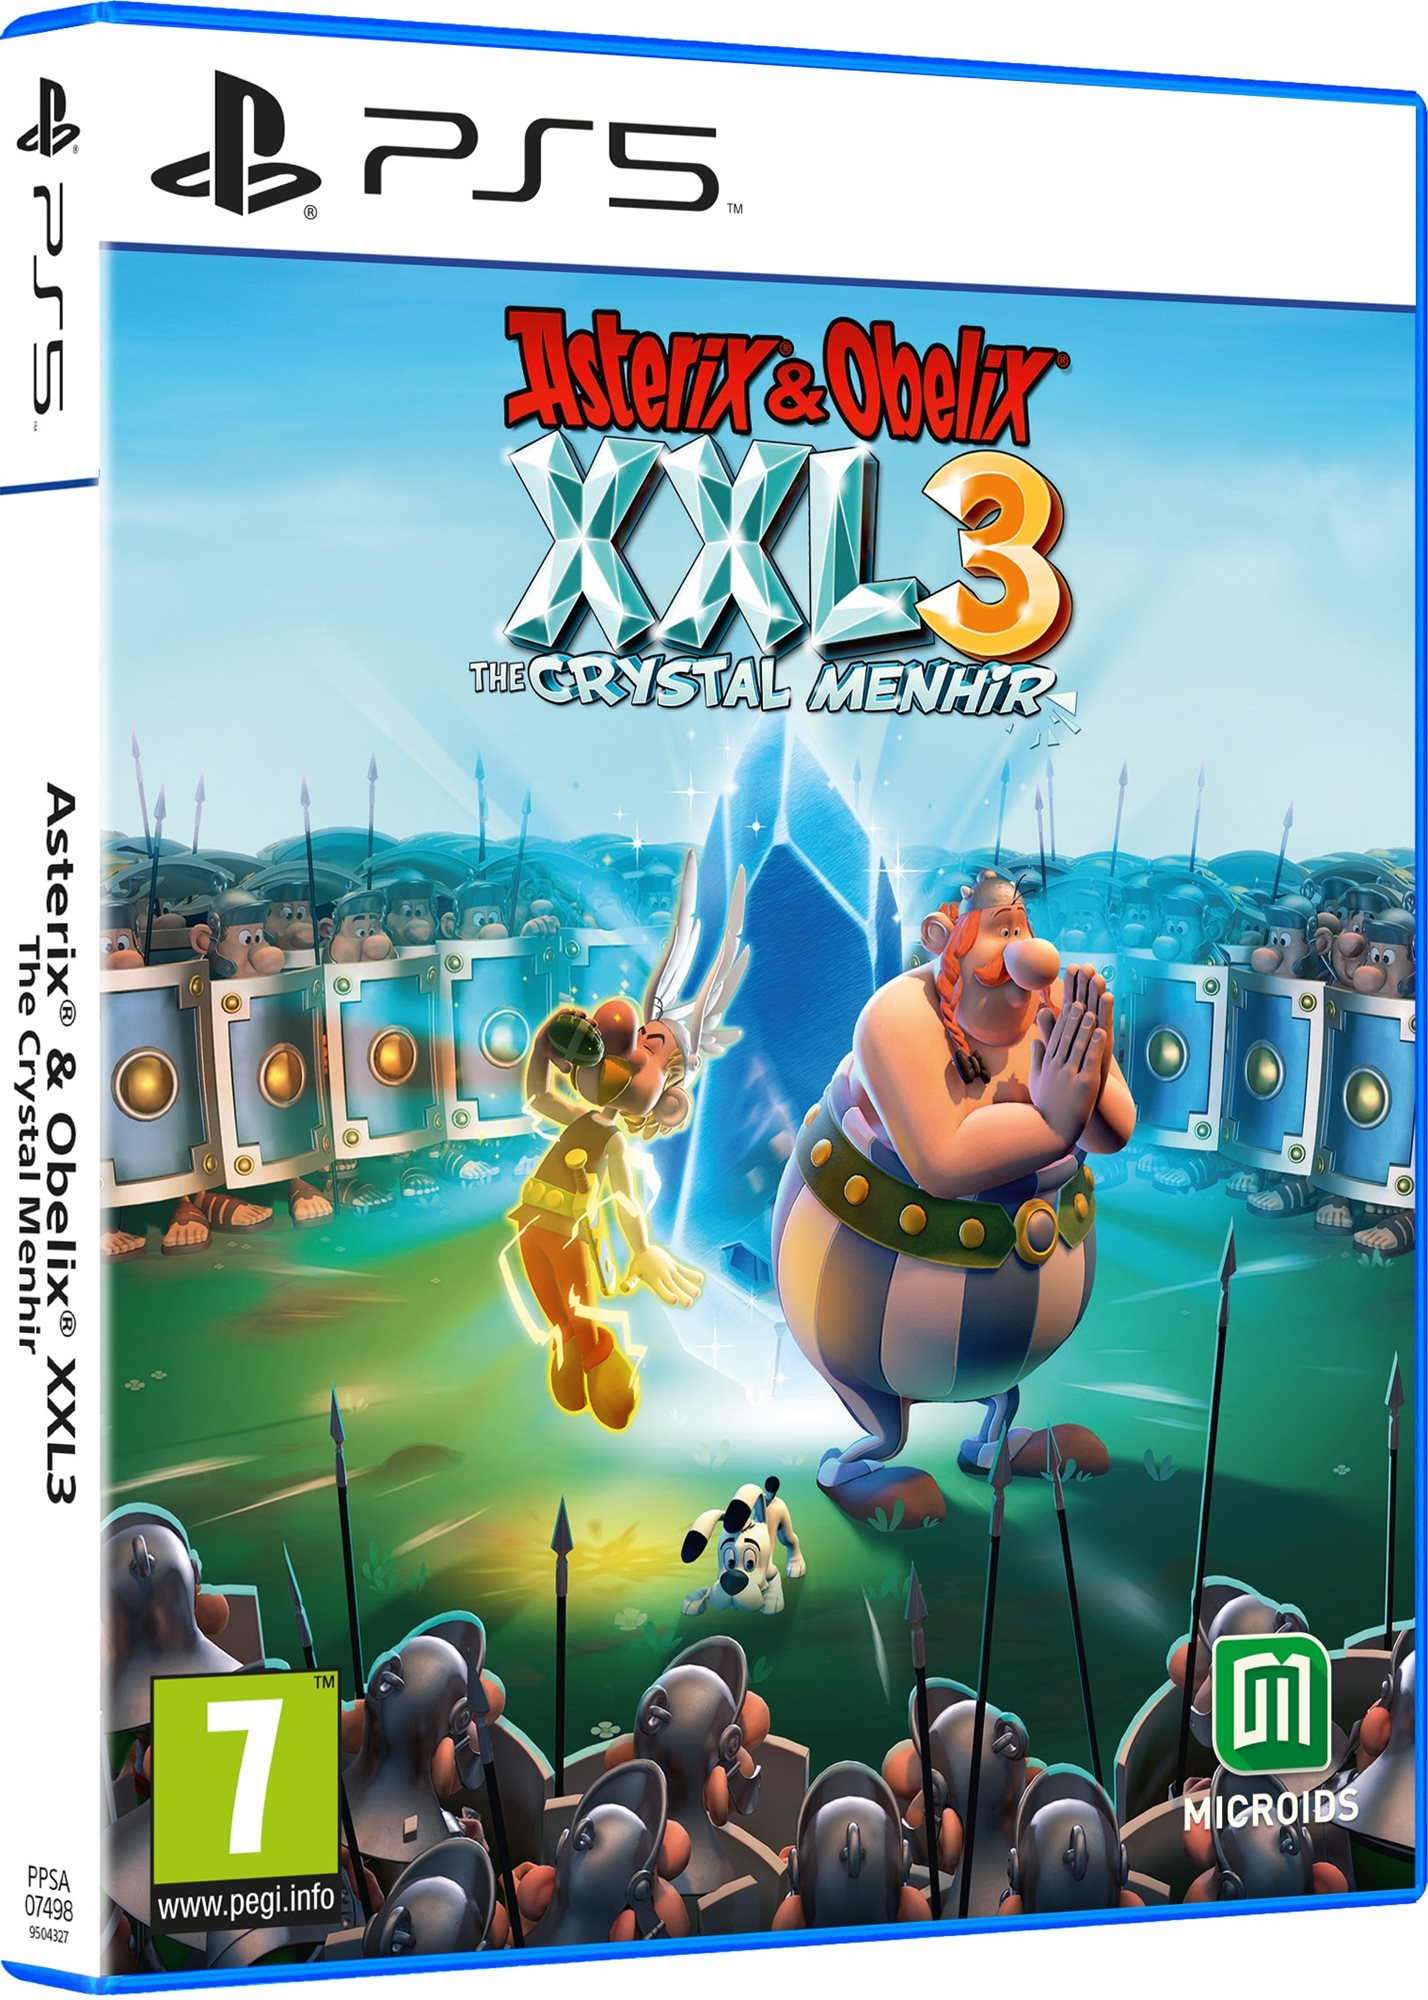 Konzol játék Asterix & Obelix XXL 3: The Crystal Menhir - PS5